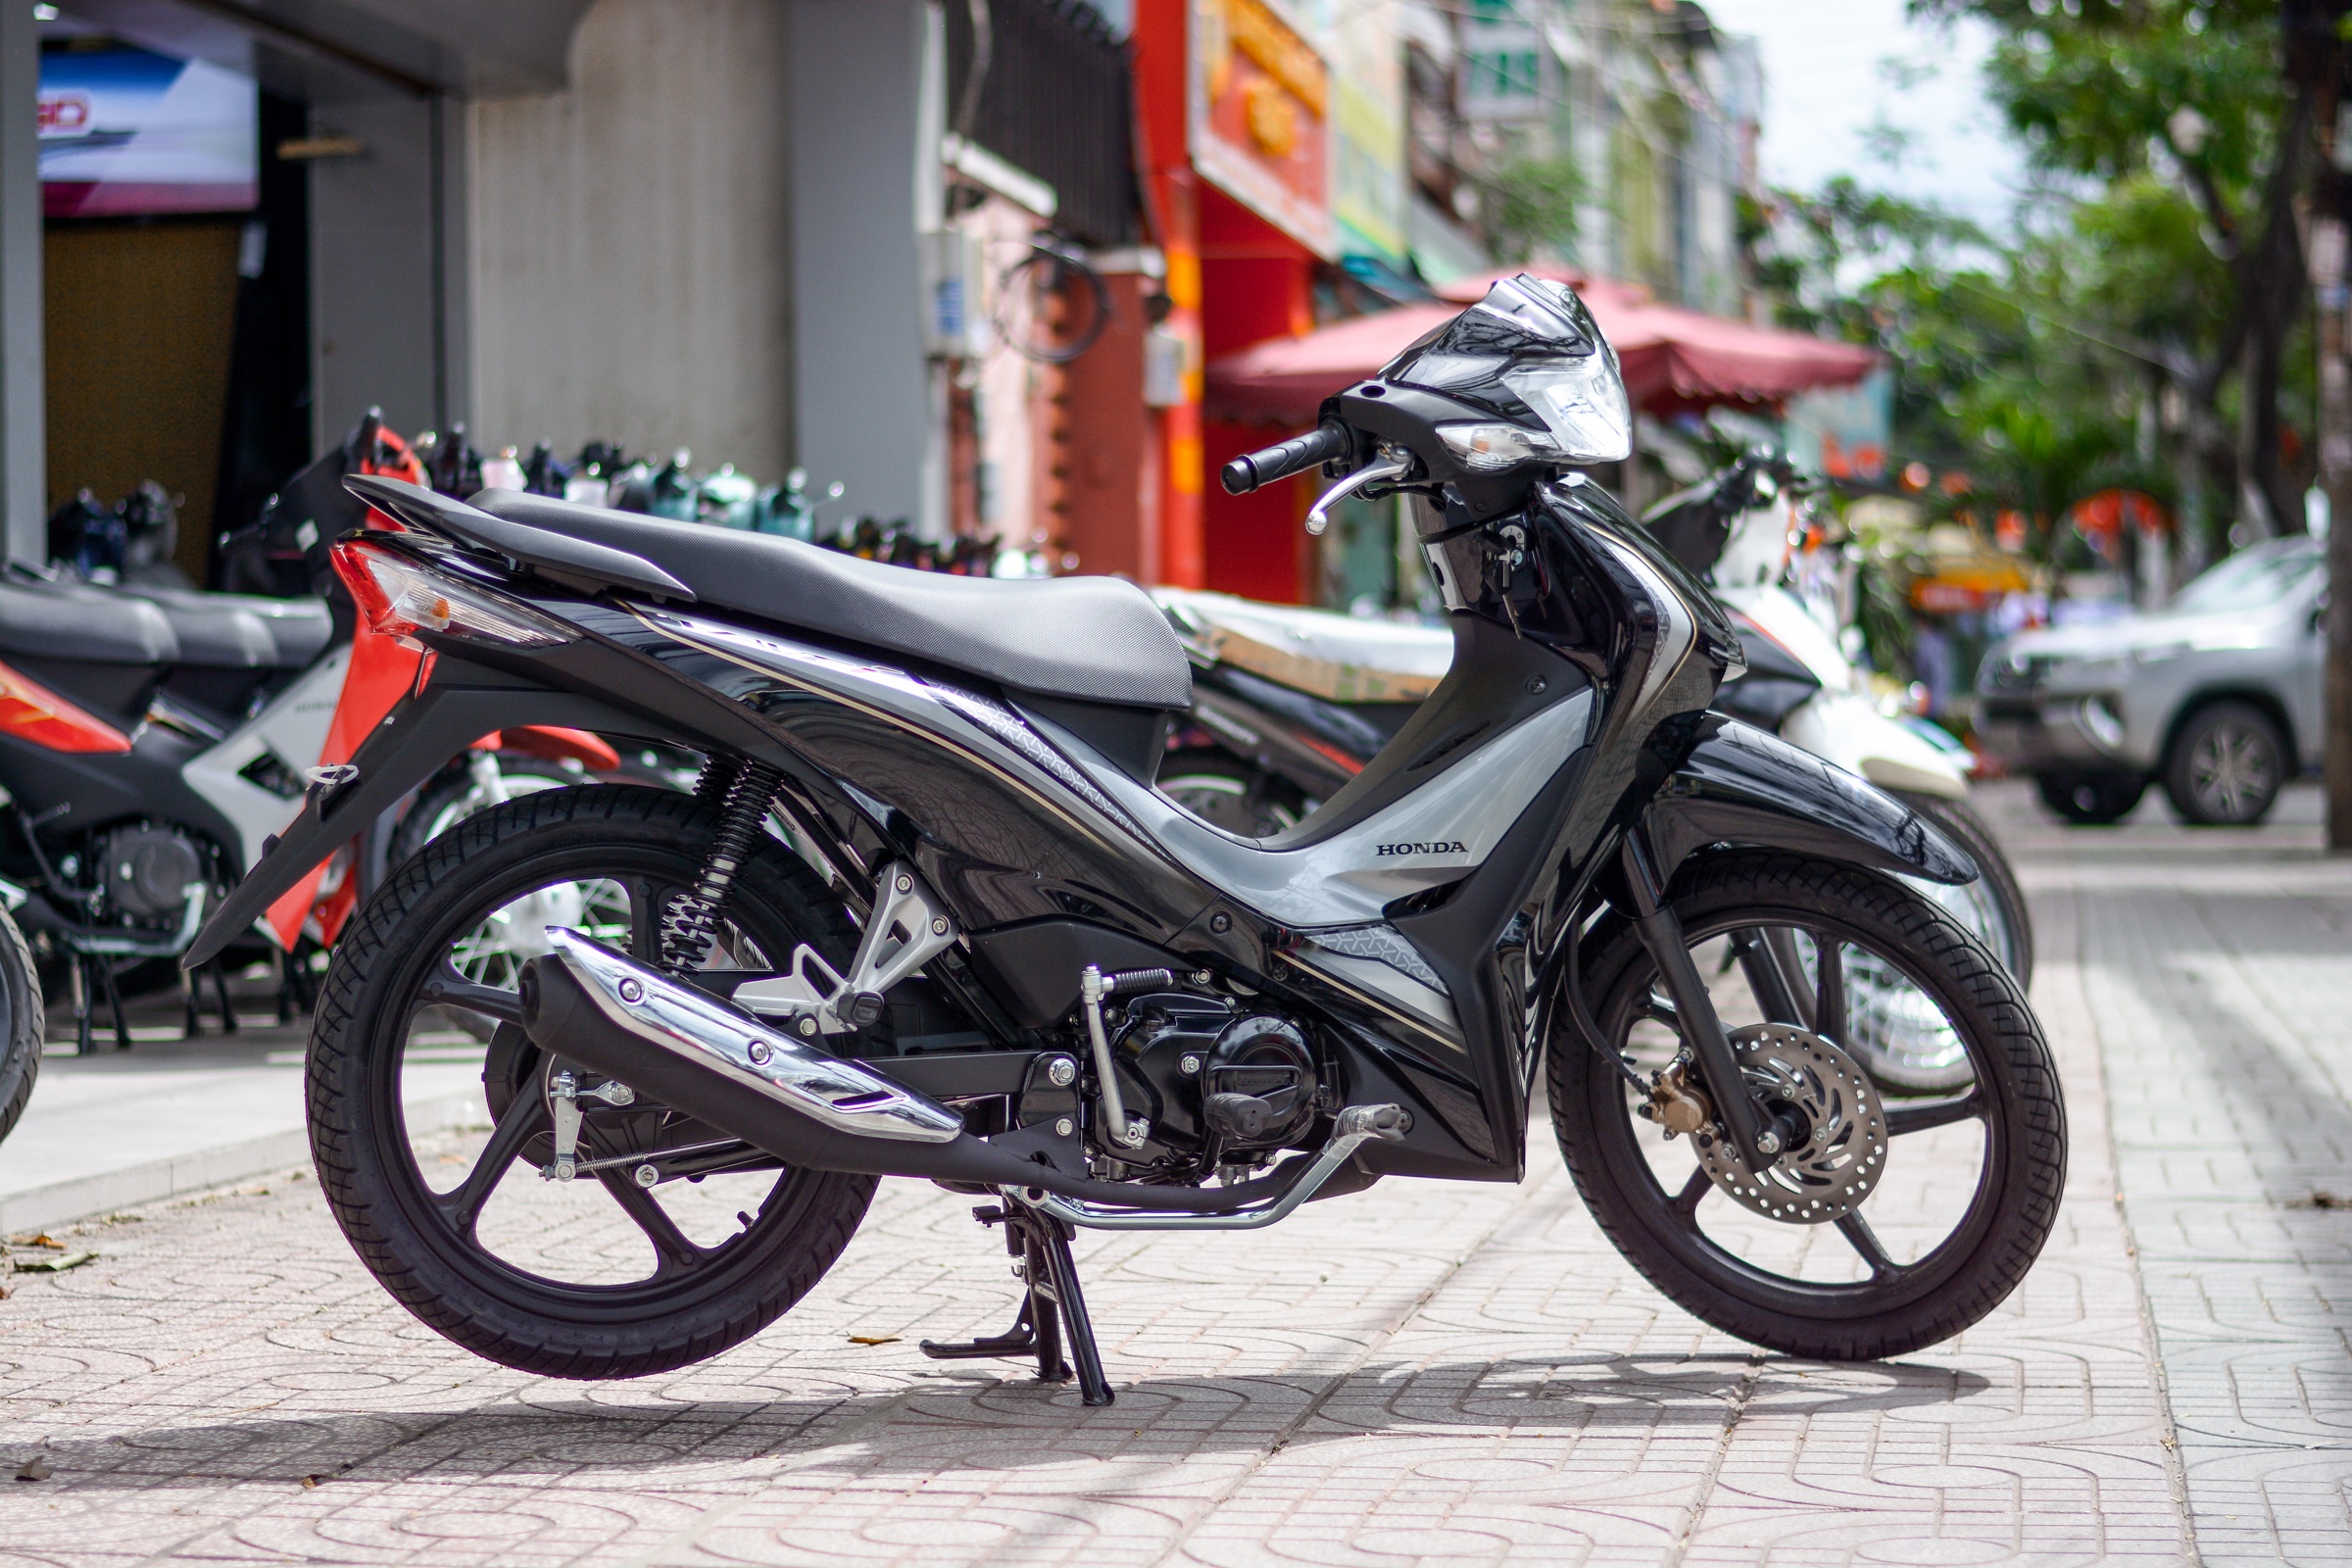 Chi tiết Honda Wave 110i tại Việt Nam - giá bán tương đương SH 125i - ảnh 8